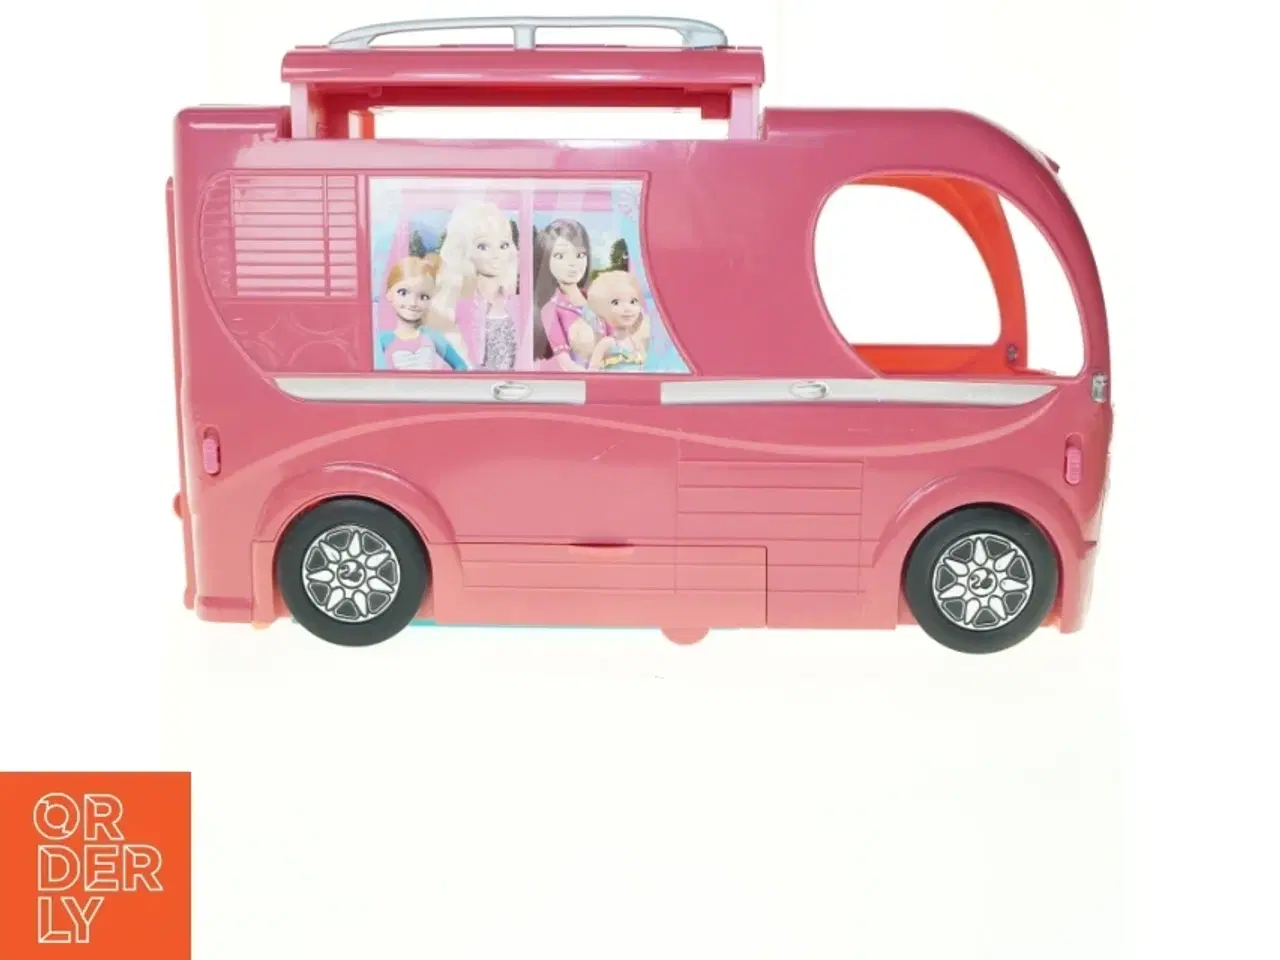 Billede 1 - Barbie autocamper fra Barbie (str. 53 x 22 x 35 cm)